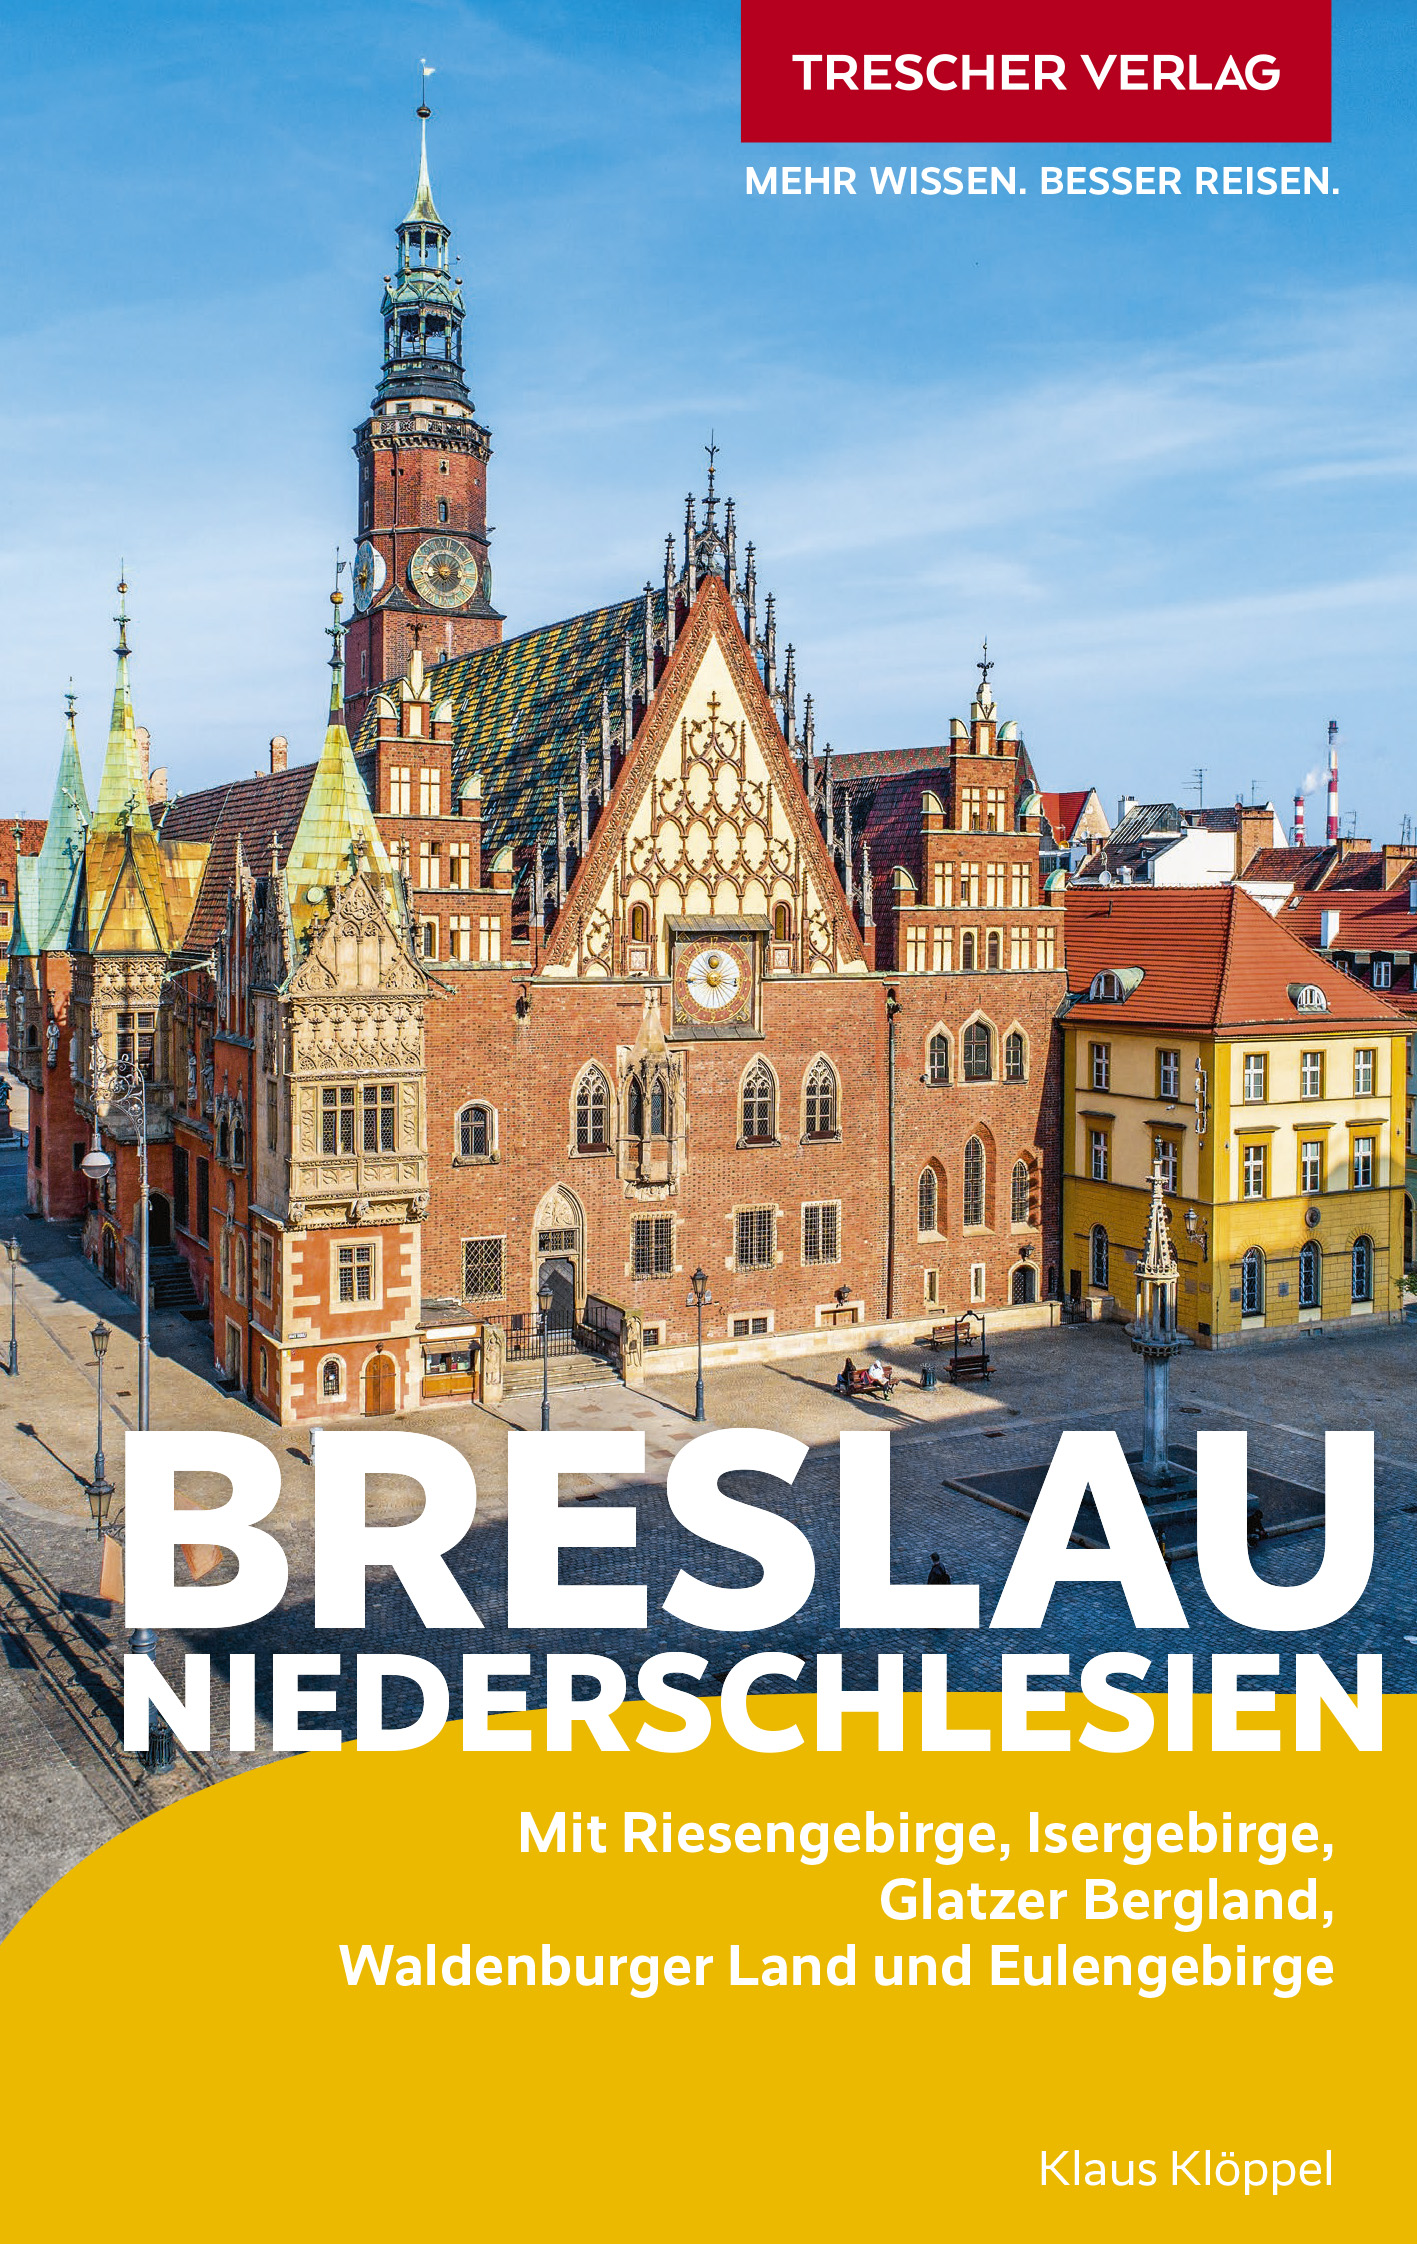 Cover des Trescher-Reiseführers Breslau